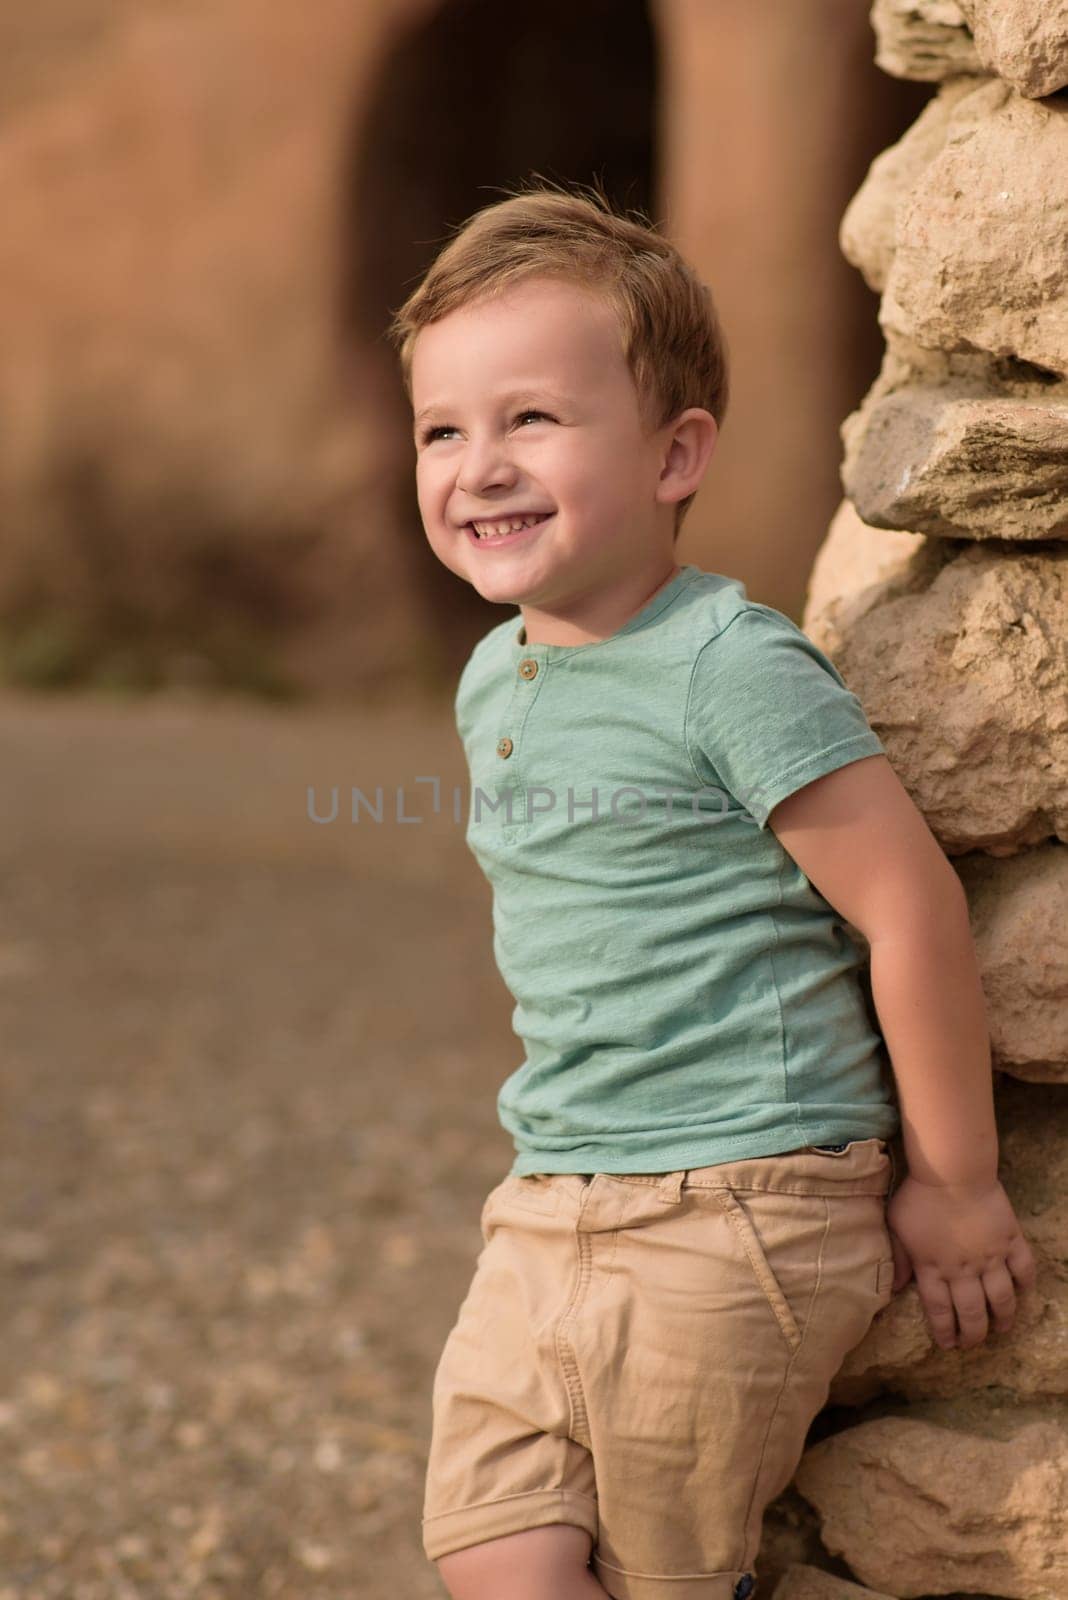 Smiling boy exploring in woods by jcdiazhidalgo